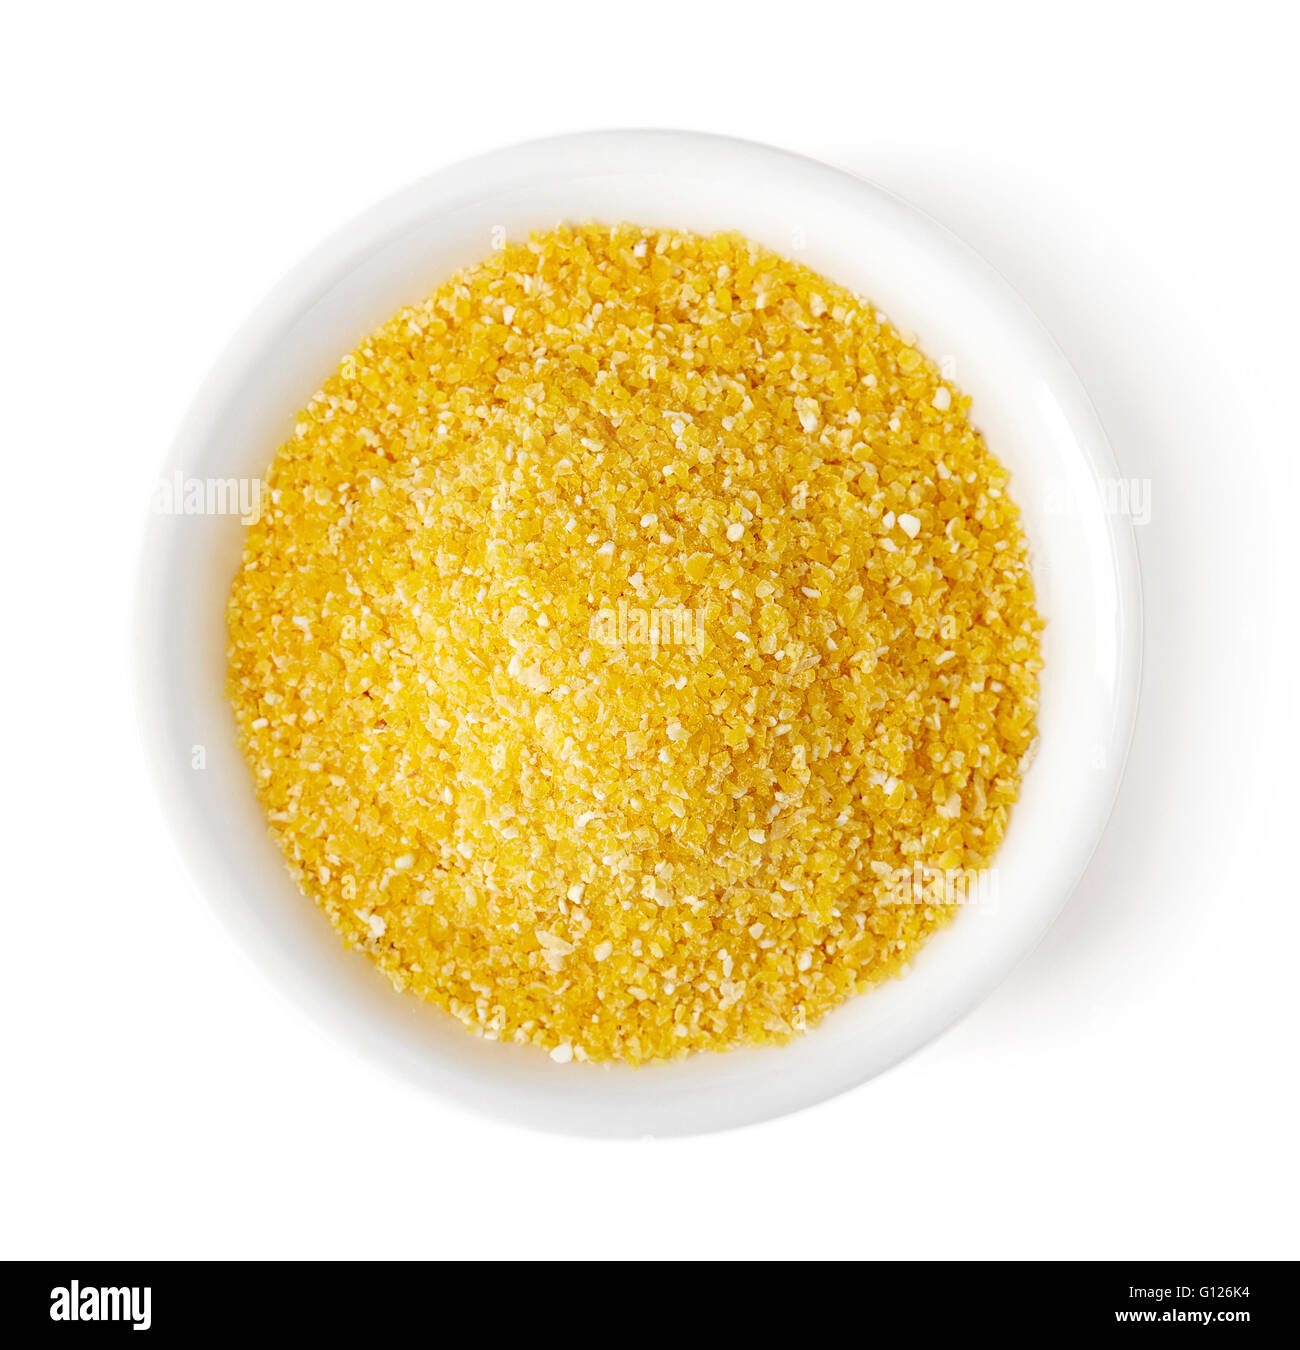 Ciotola di mais giallo grits isolati su sfondo bianco, vista dall'alto Foto Stock